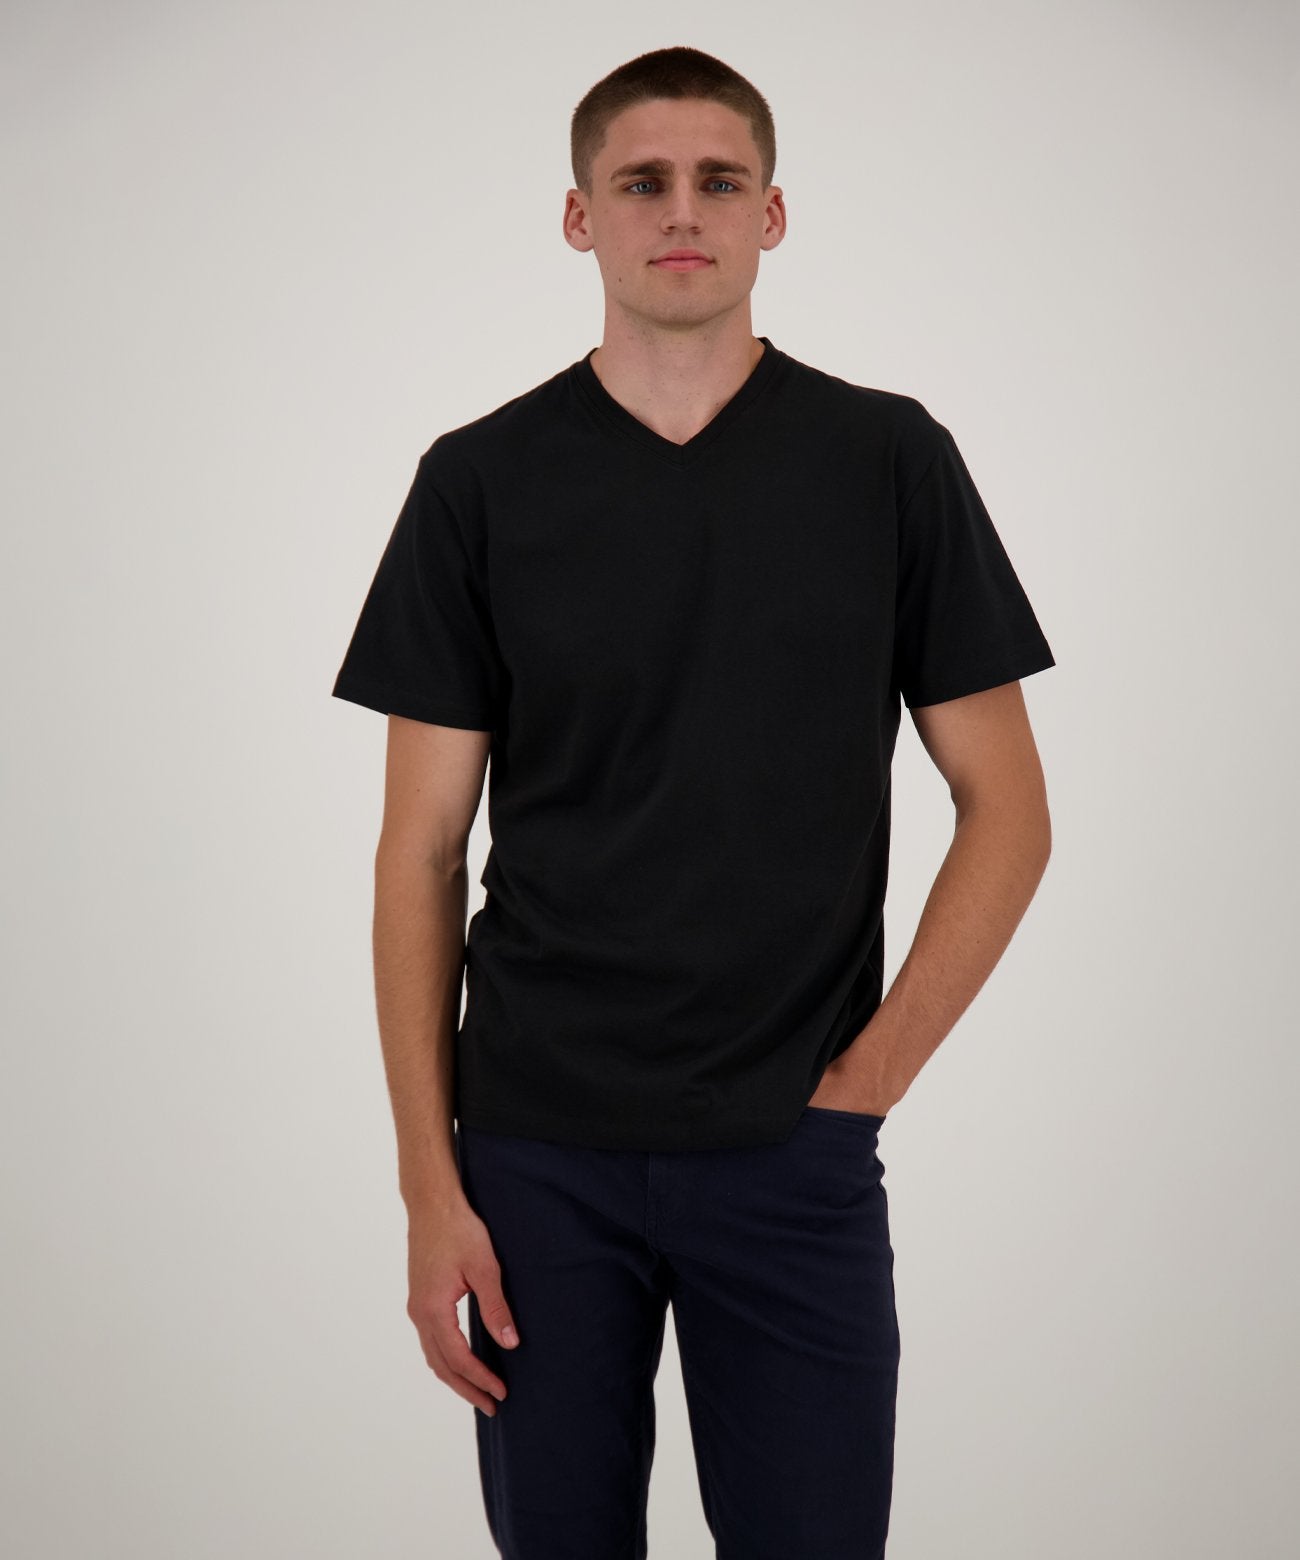 RAGMAN Doppelpack - 2 T-Shirts mit V-Ausschnitt (Schwarz)